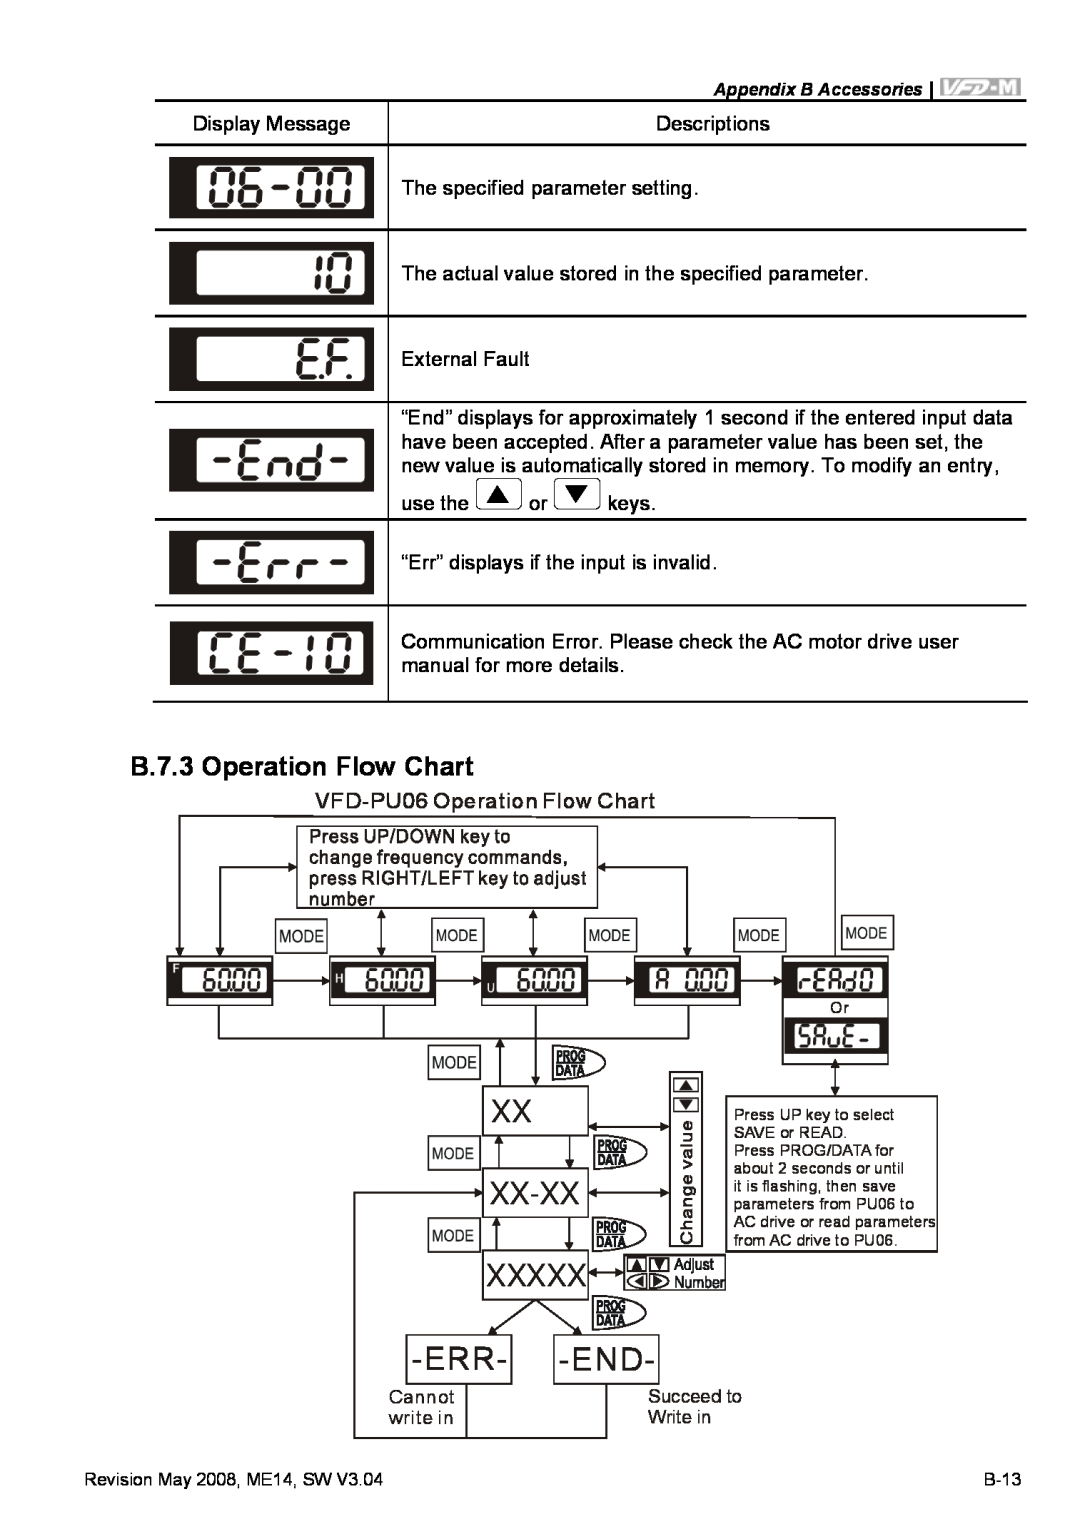 Delta Electronics VFD-M manual Xx-Xx, Xxxxx -Err- -End, B.7.3 Operation Flow Chart 